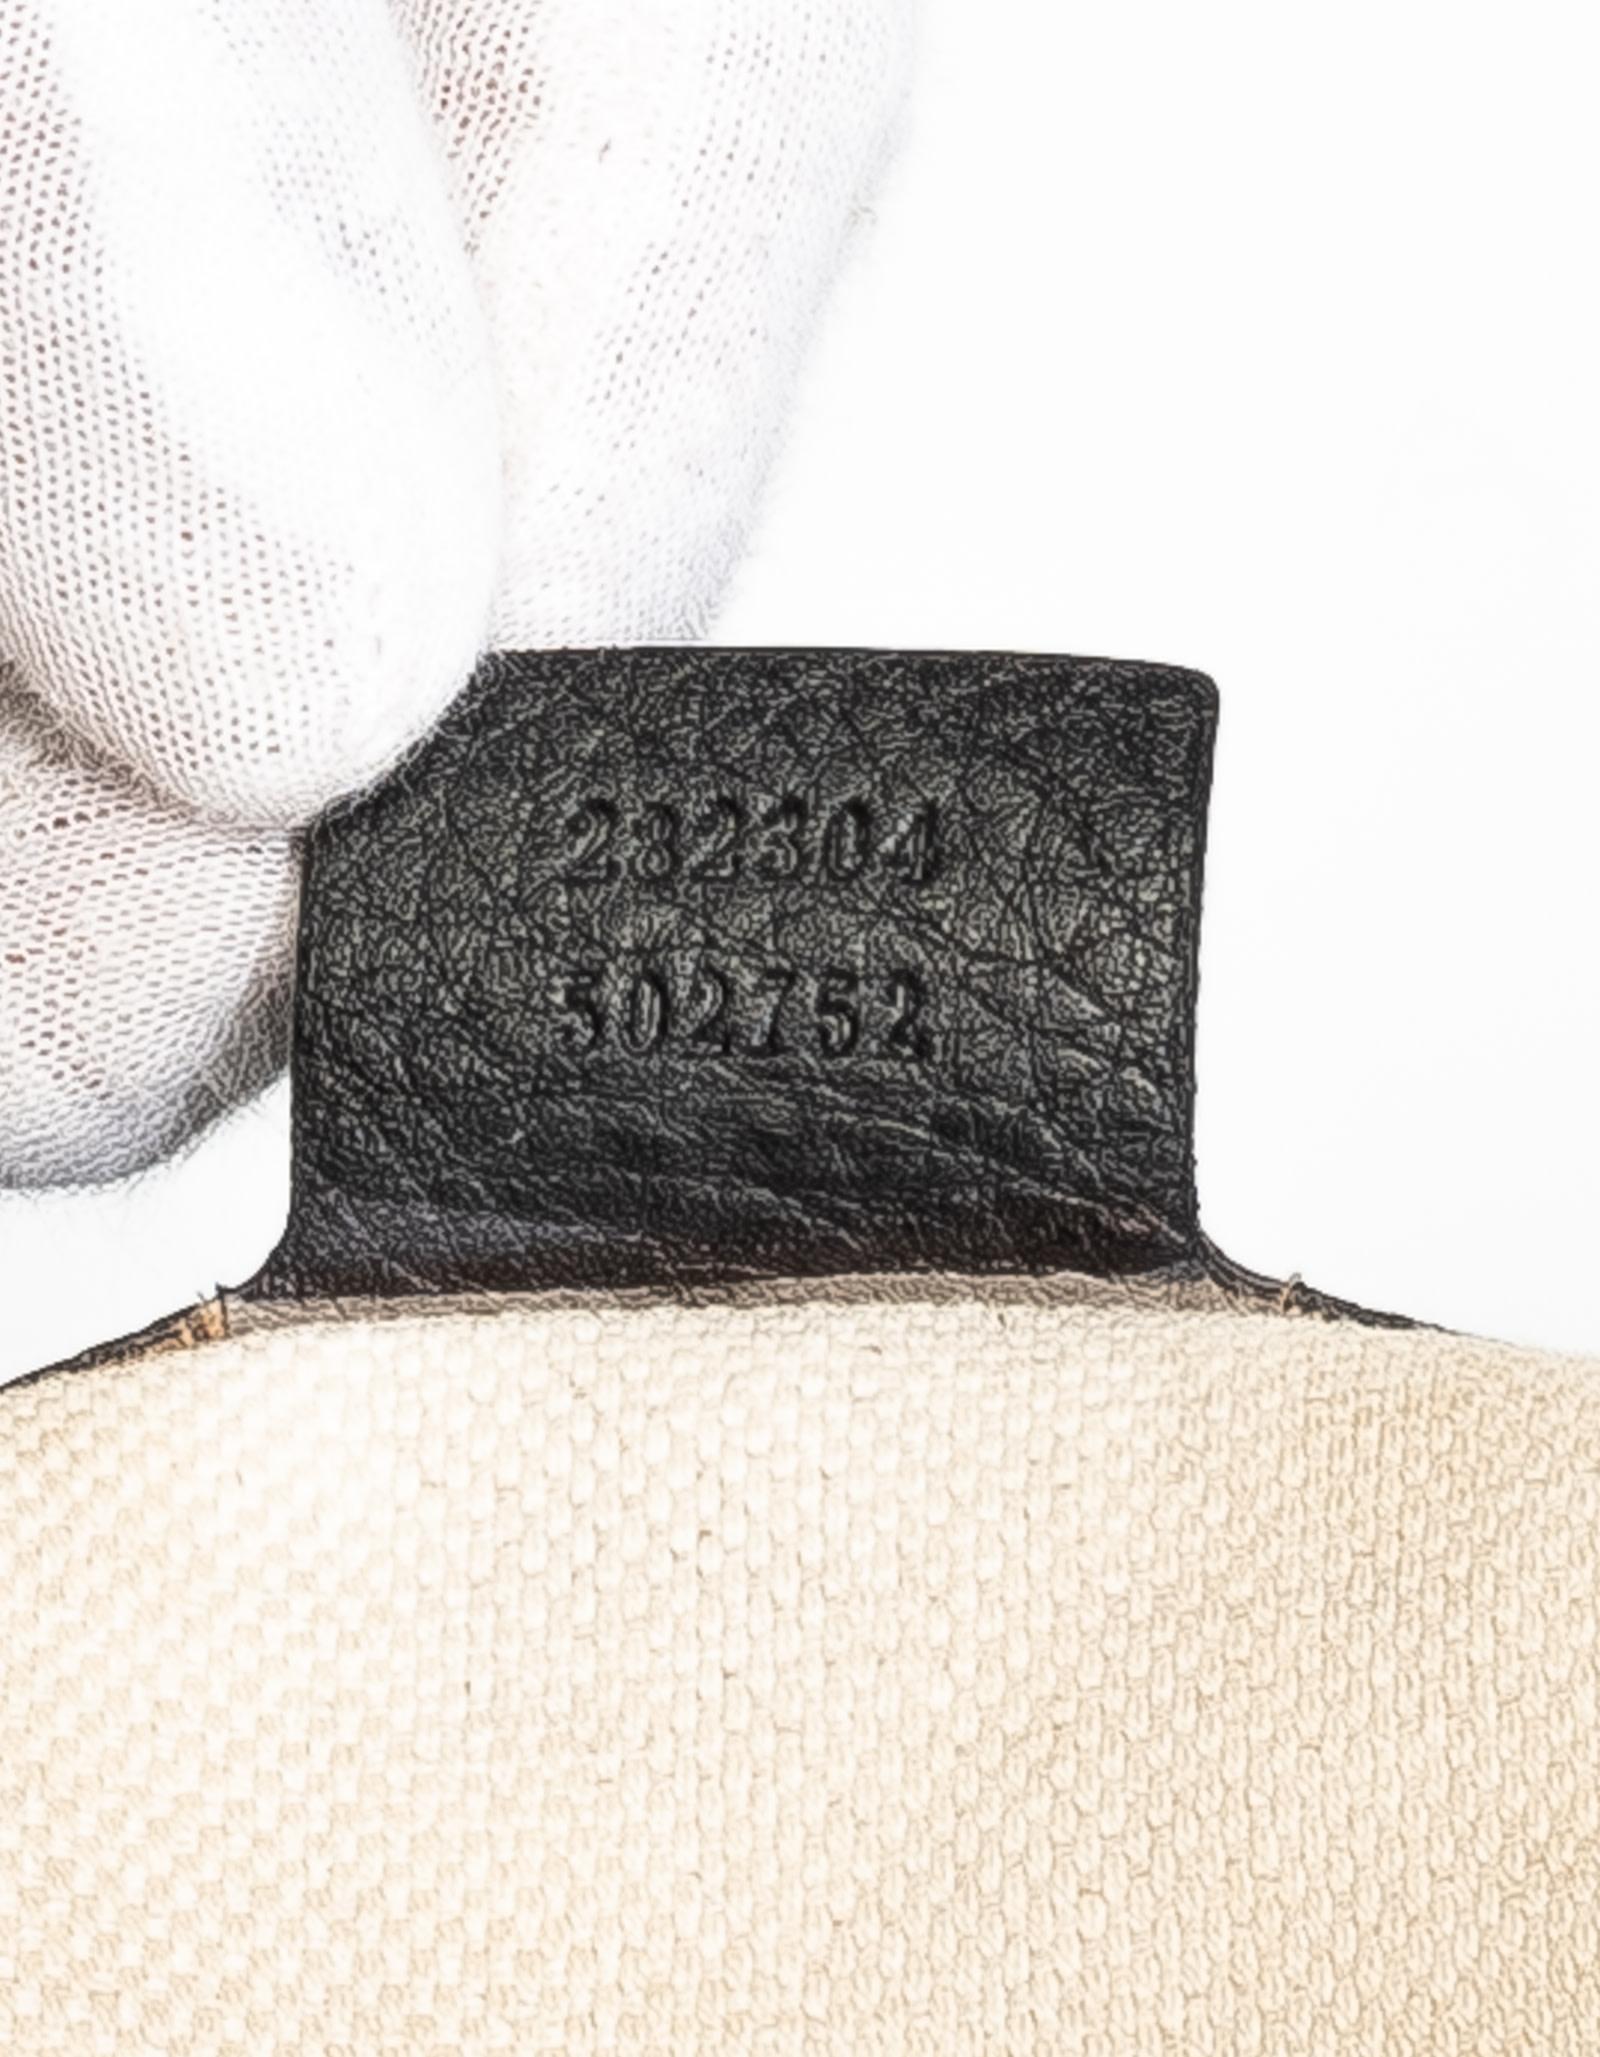 Women's or Men's Gucci Soho Black Leather Shoulder Bag